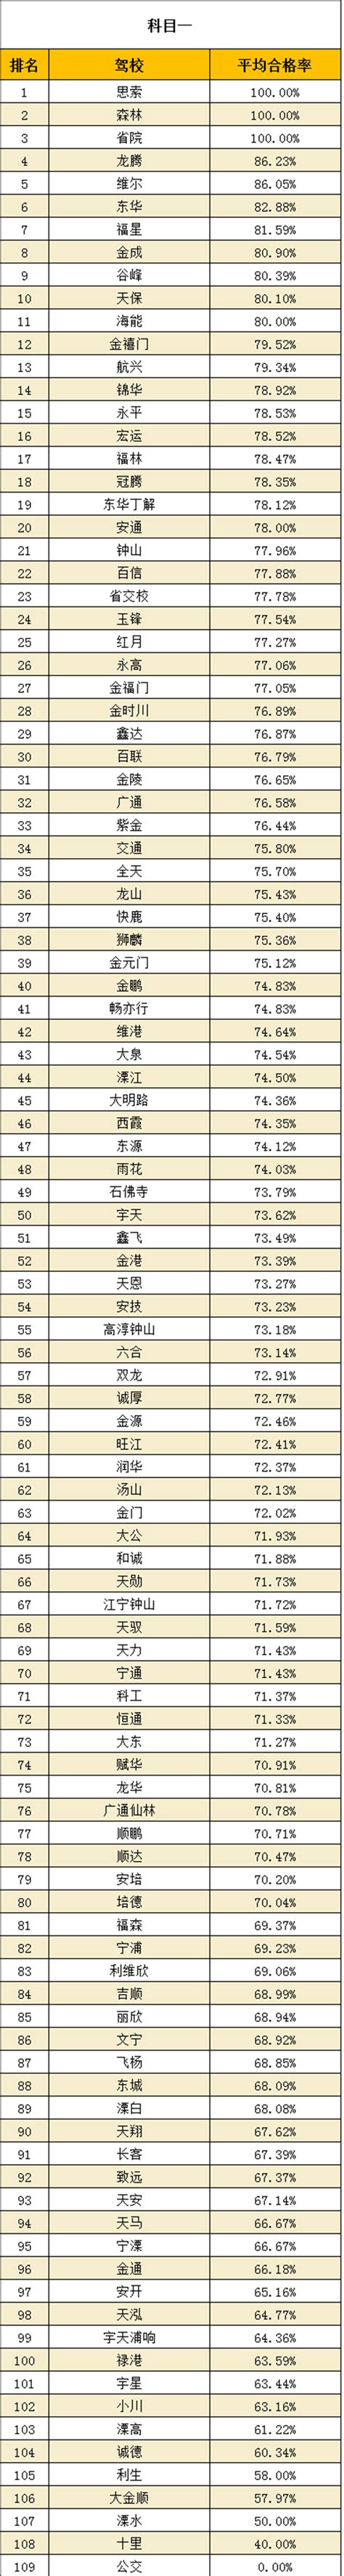 【权威发布】2020年1-8月南京驾校考试合格率排名-南京驾校网